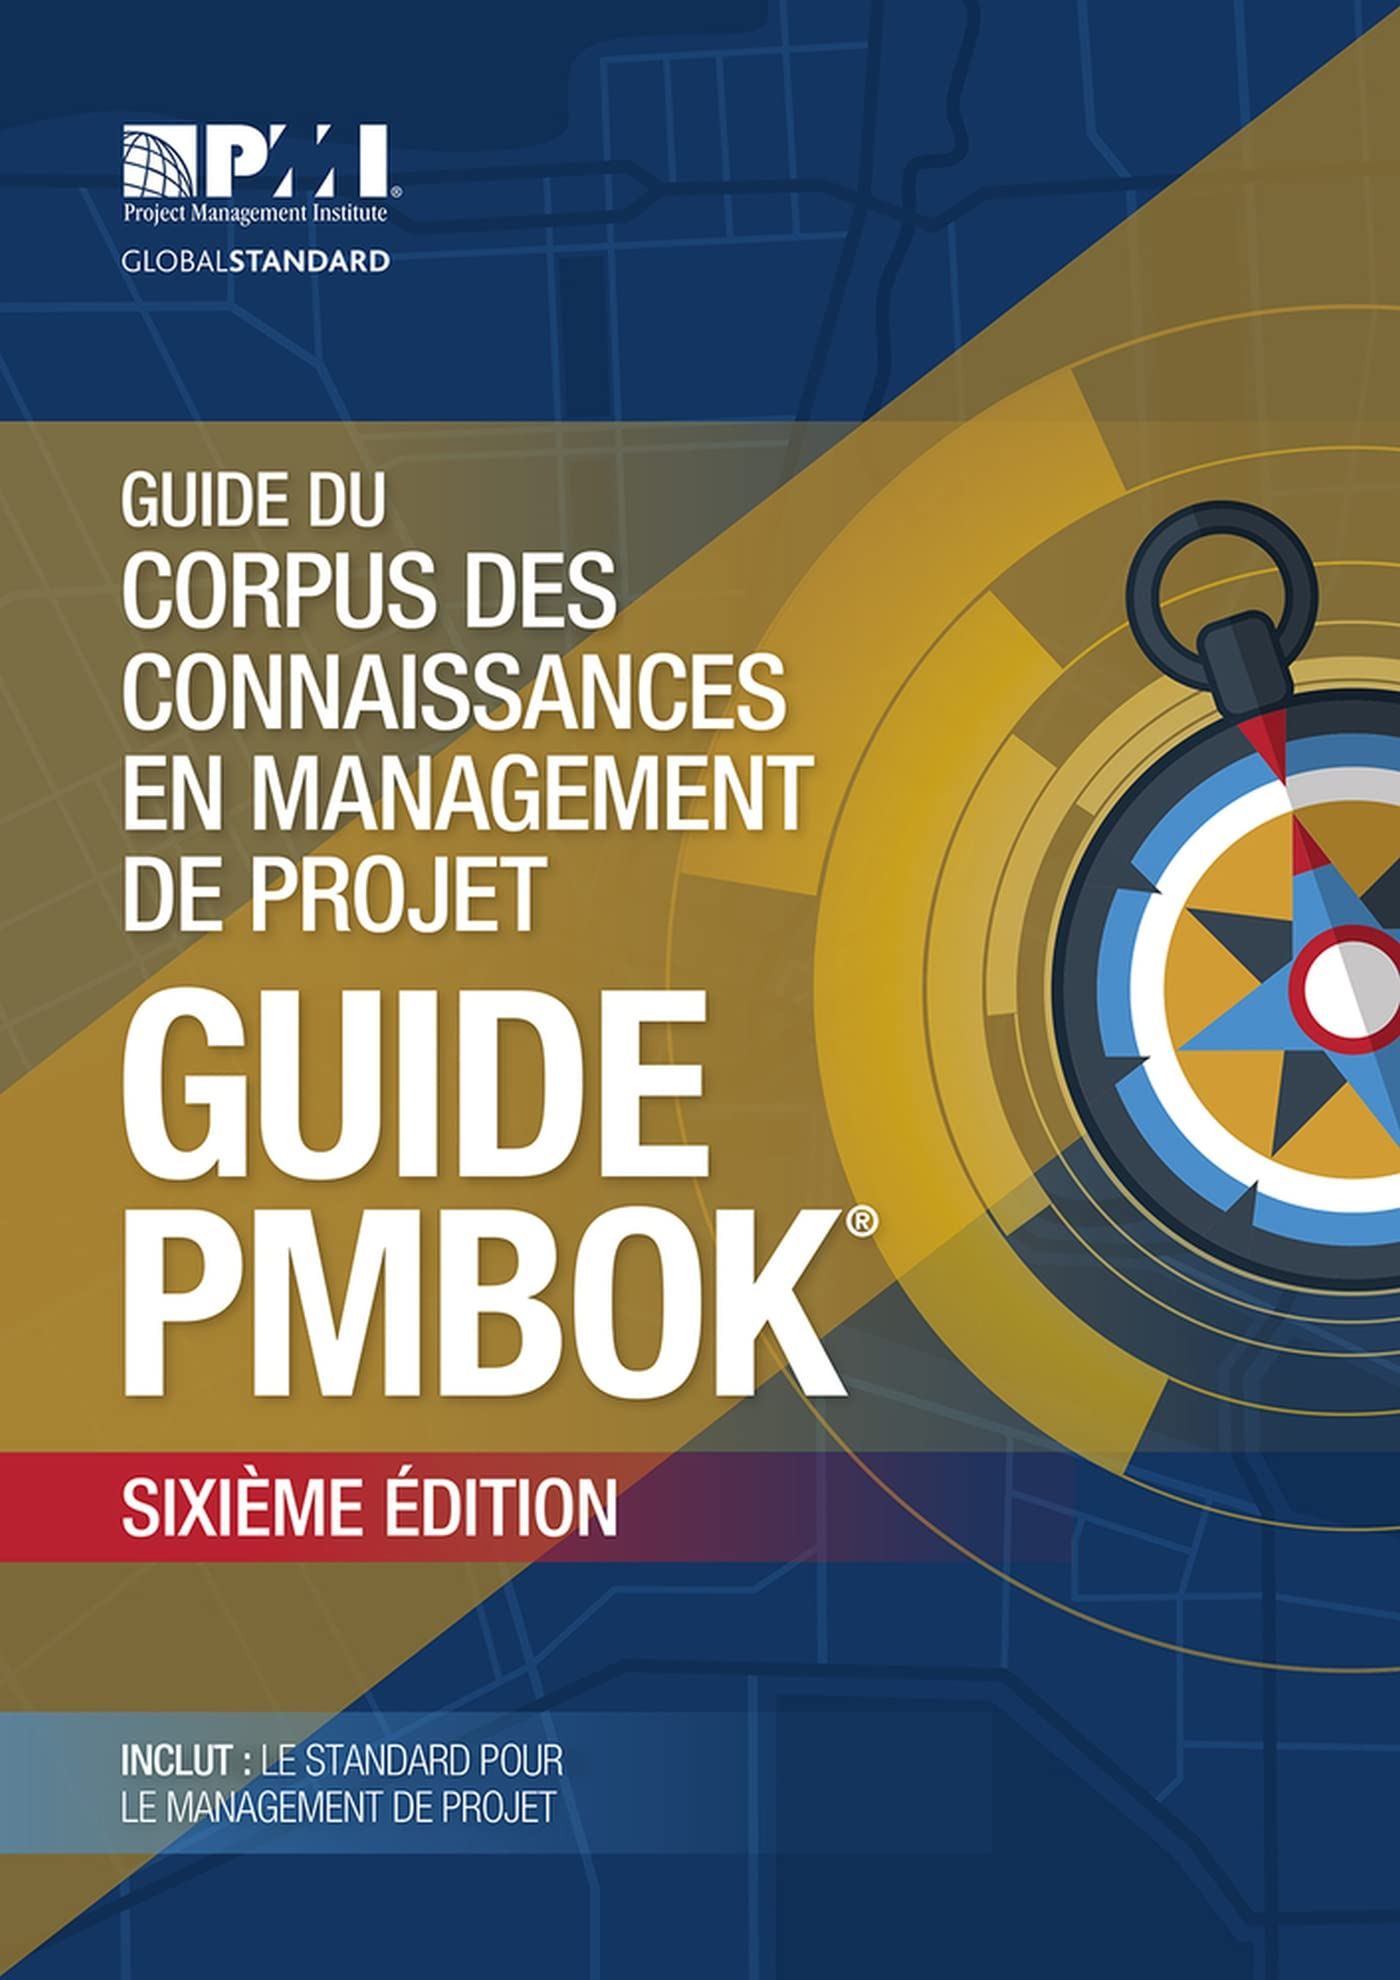 Guide du Corpus des connaissances en management de projet: Guide PMBOK